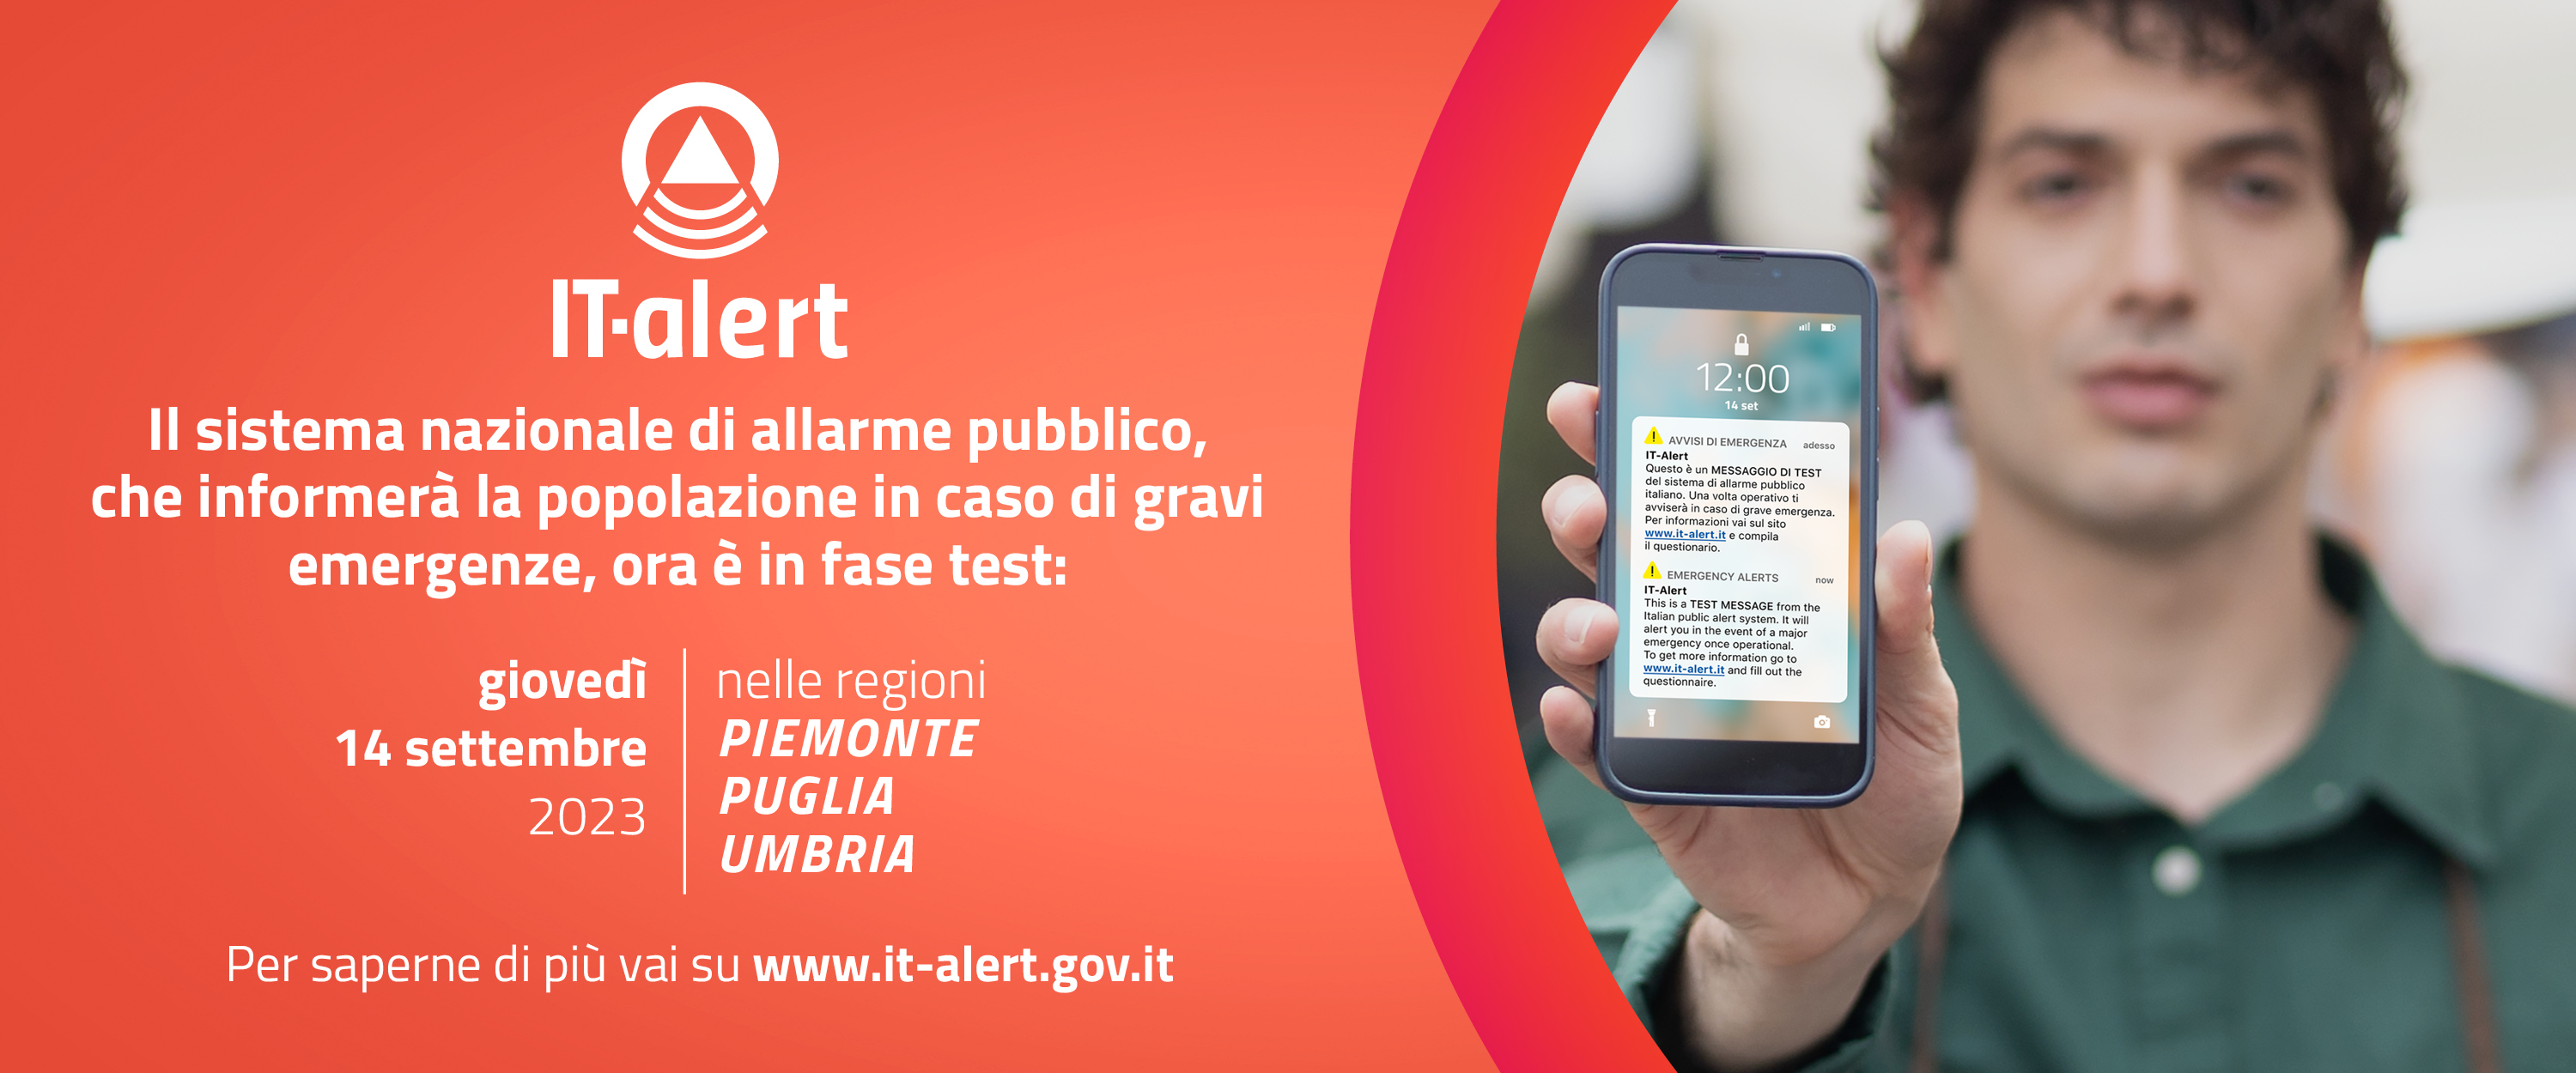 Galleria Il 14 settembre in Puglia verrà testato il nuovo sistema di allarme pubblico nazionale promosso dal Governo italiano - Diapositiva 3 di 3